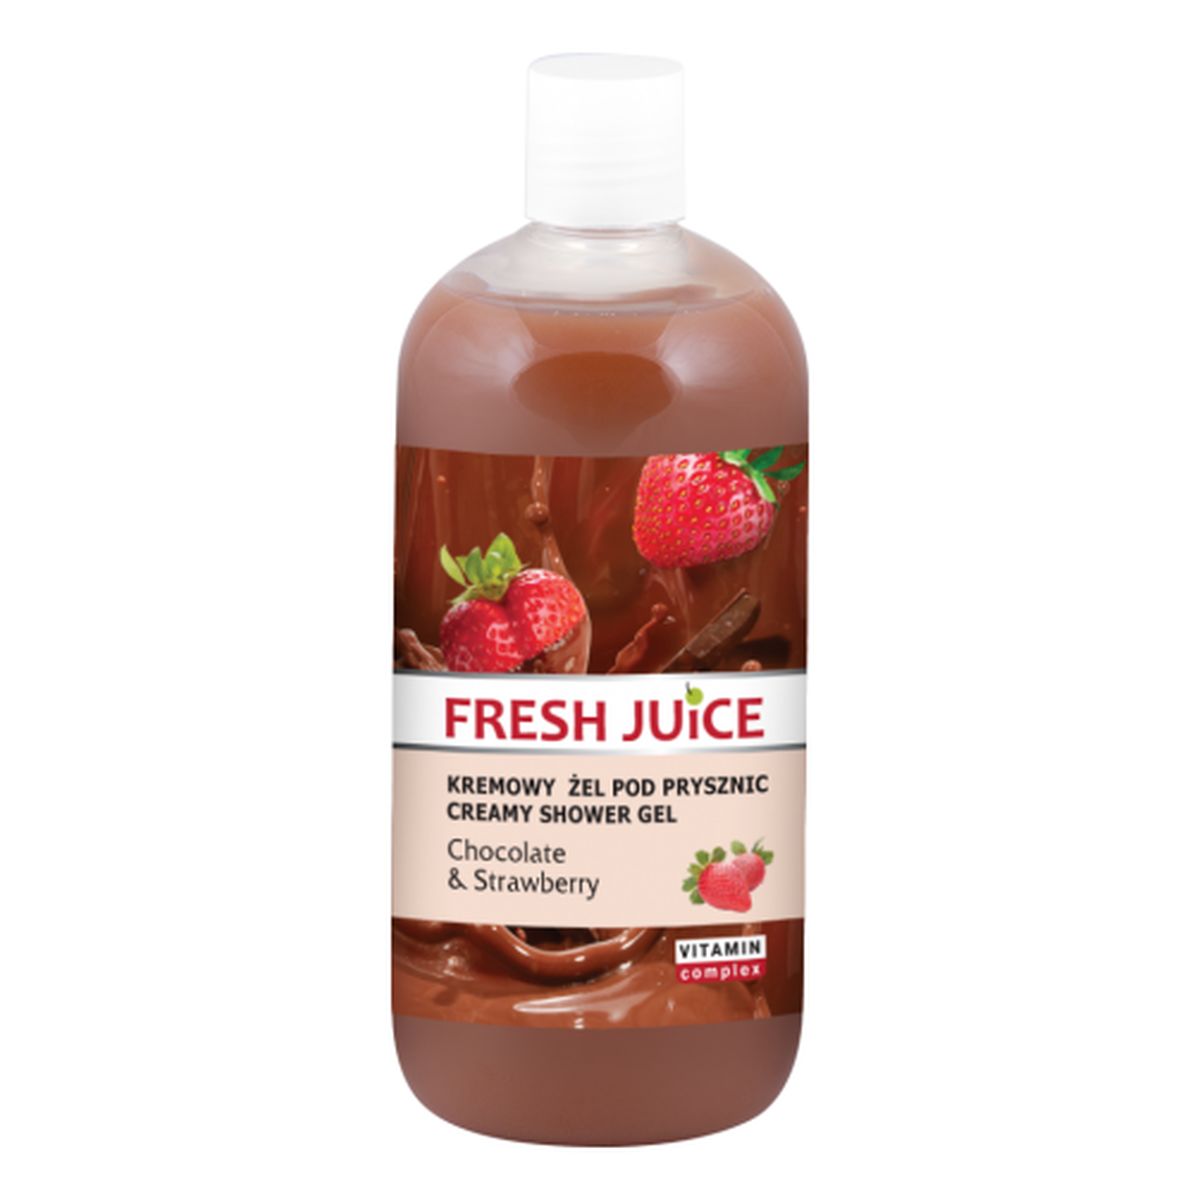 Fresh Juice Chocolate & Strawberry Kremowy Żel Pod Prysznic 500ml